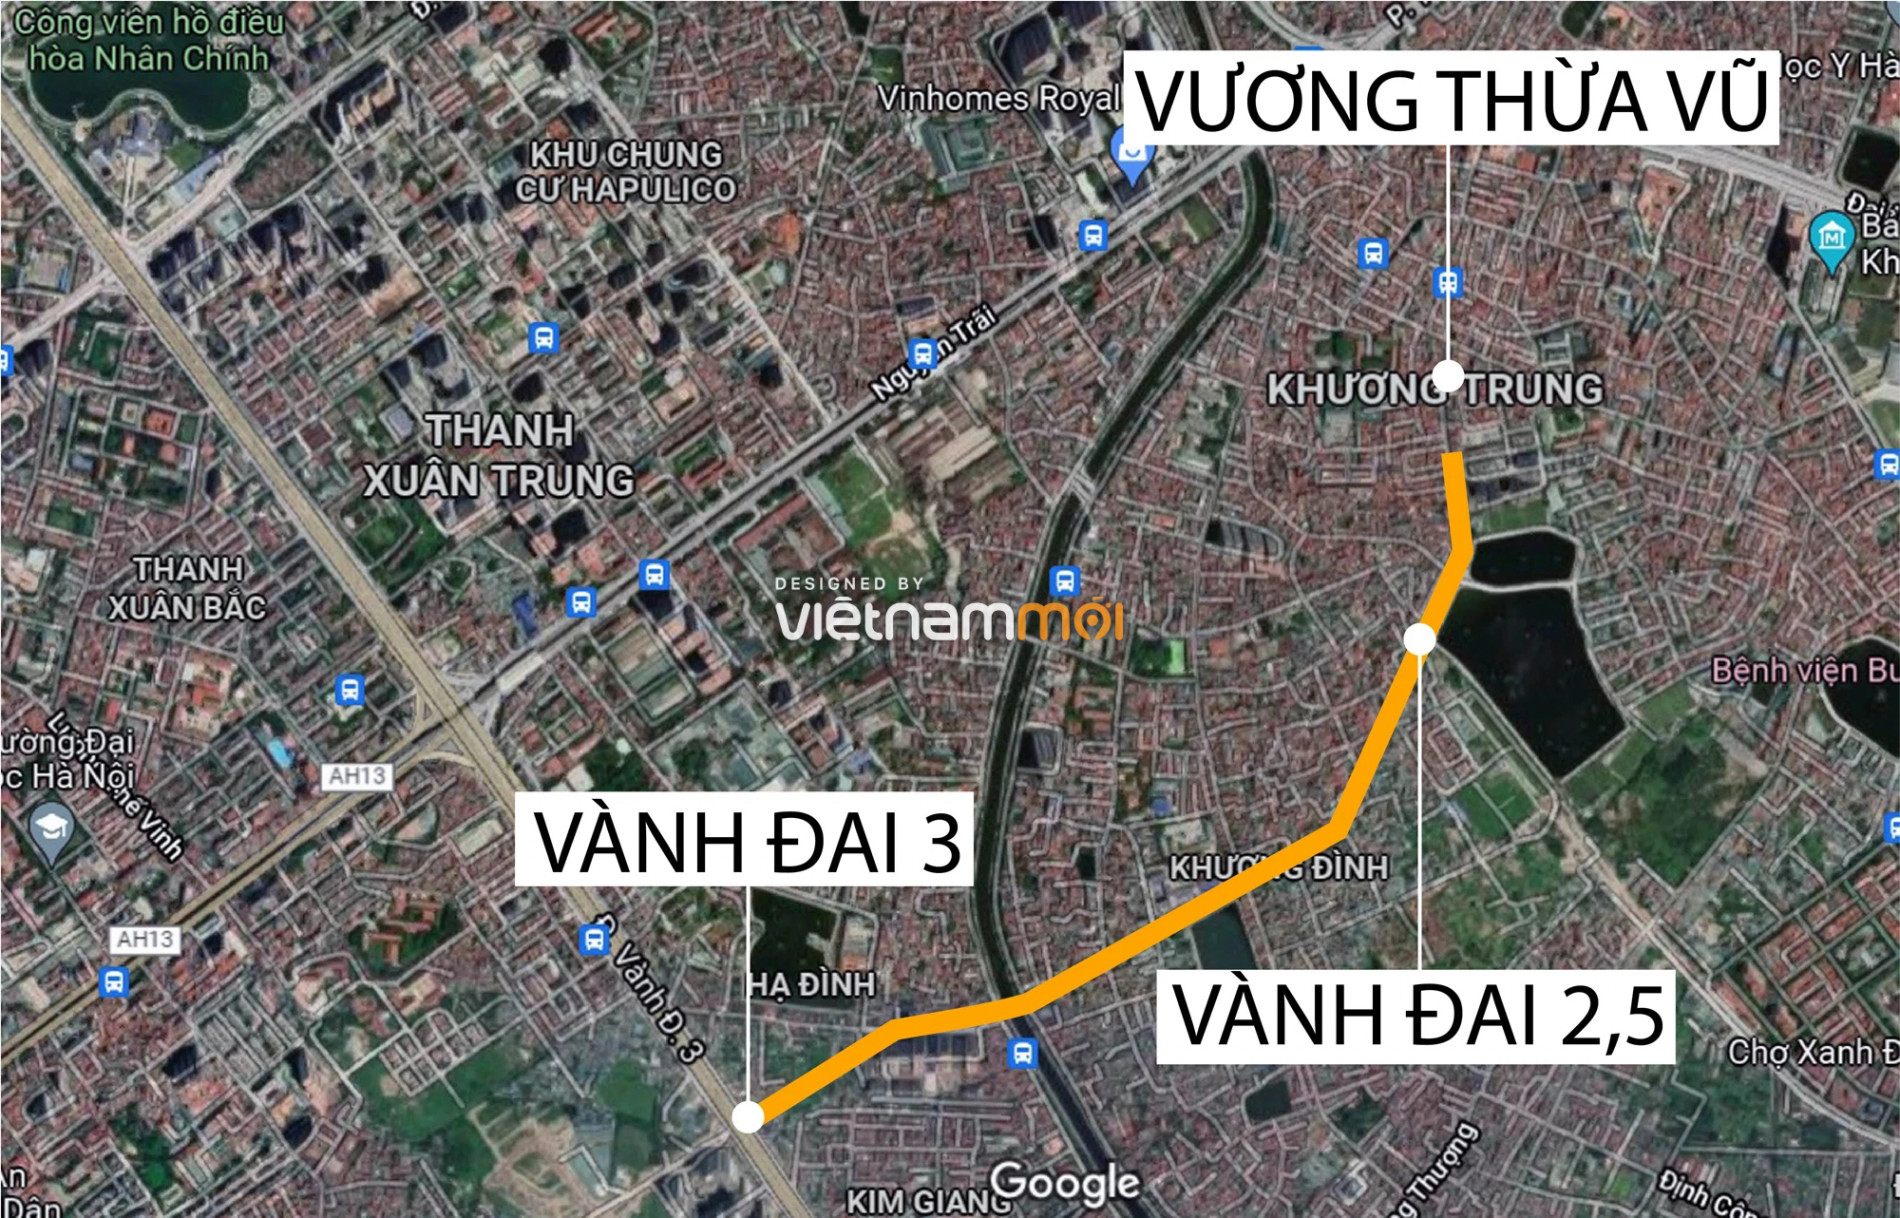 Toàn cảnh dự án đường Tôn Thất Tùng kéo dài đang được Hà Nội rà soát